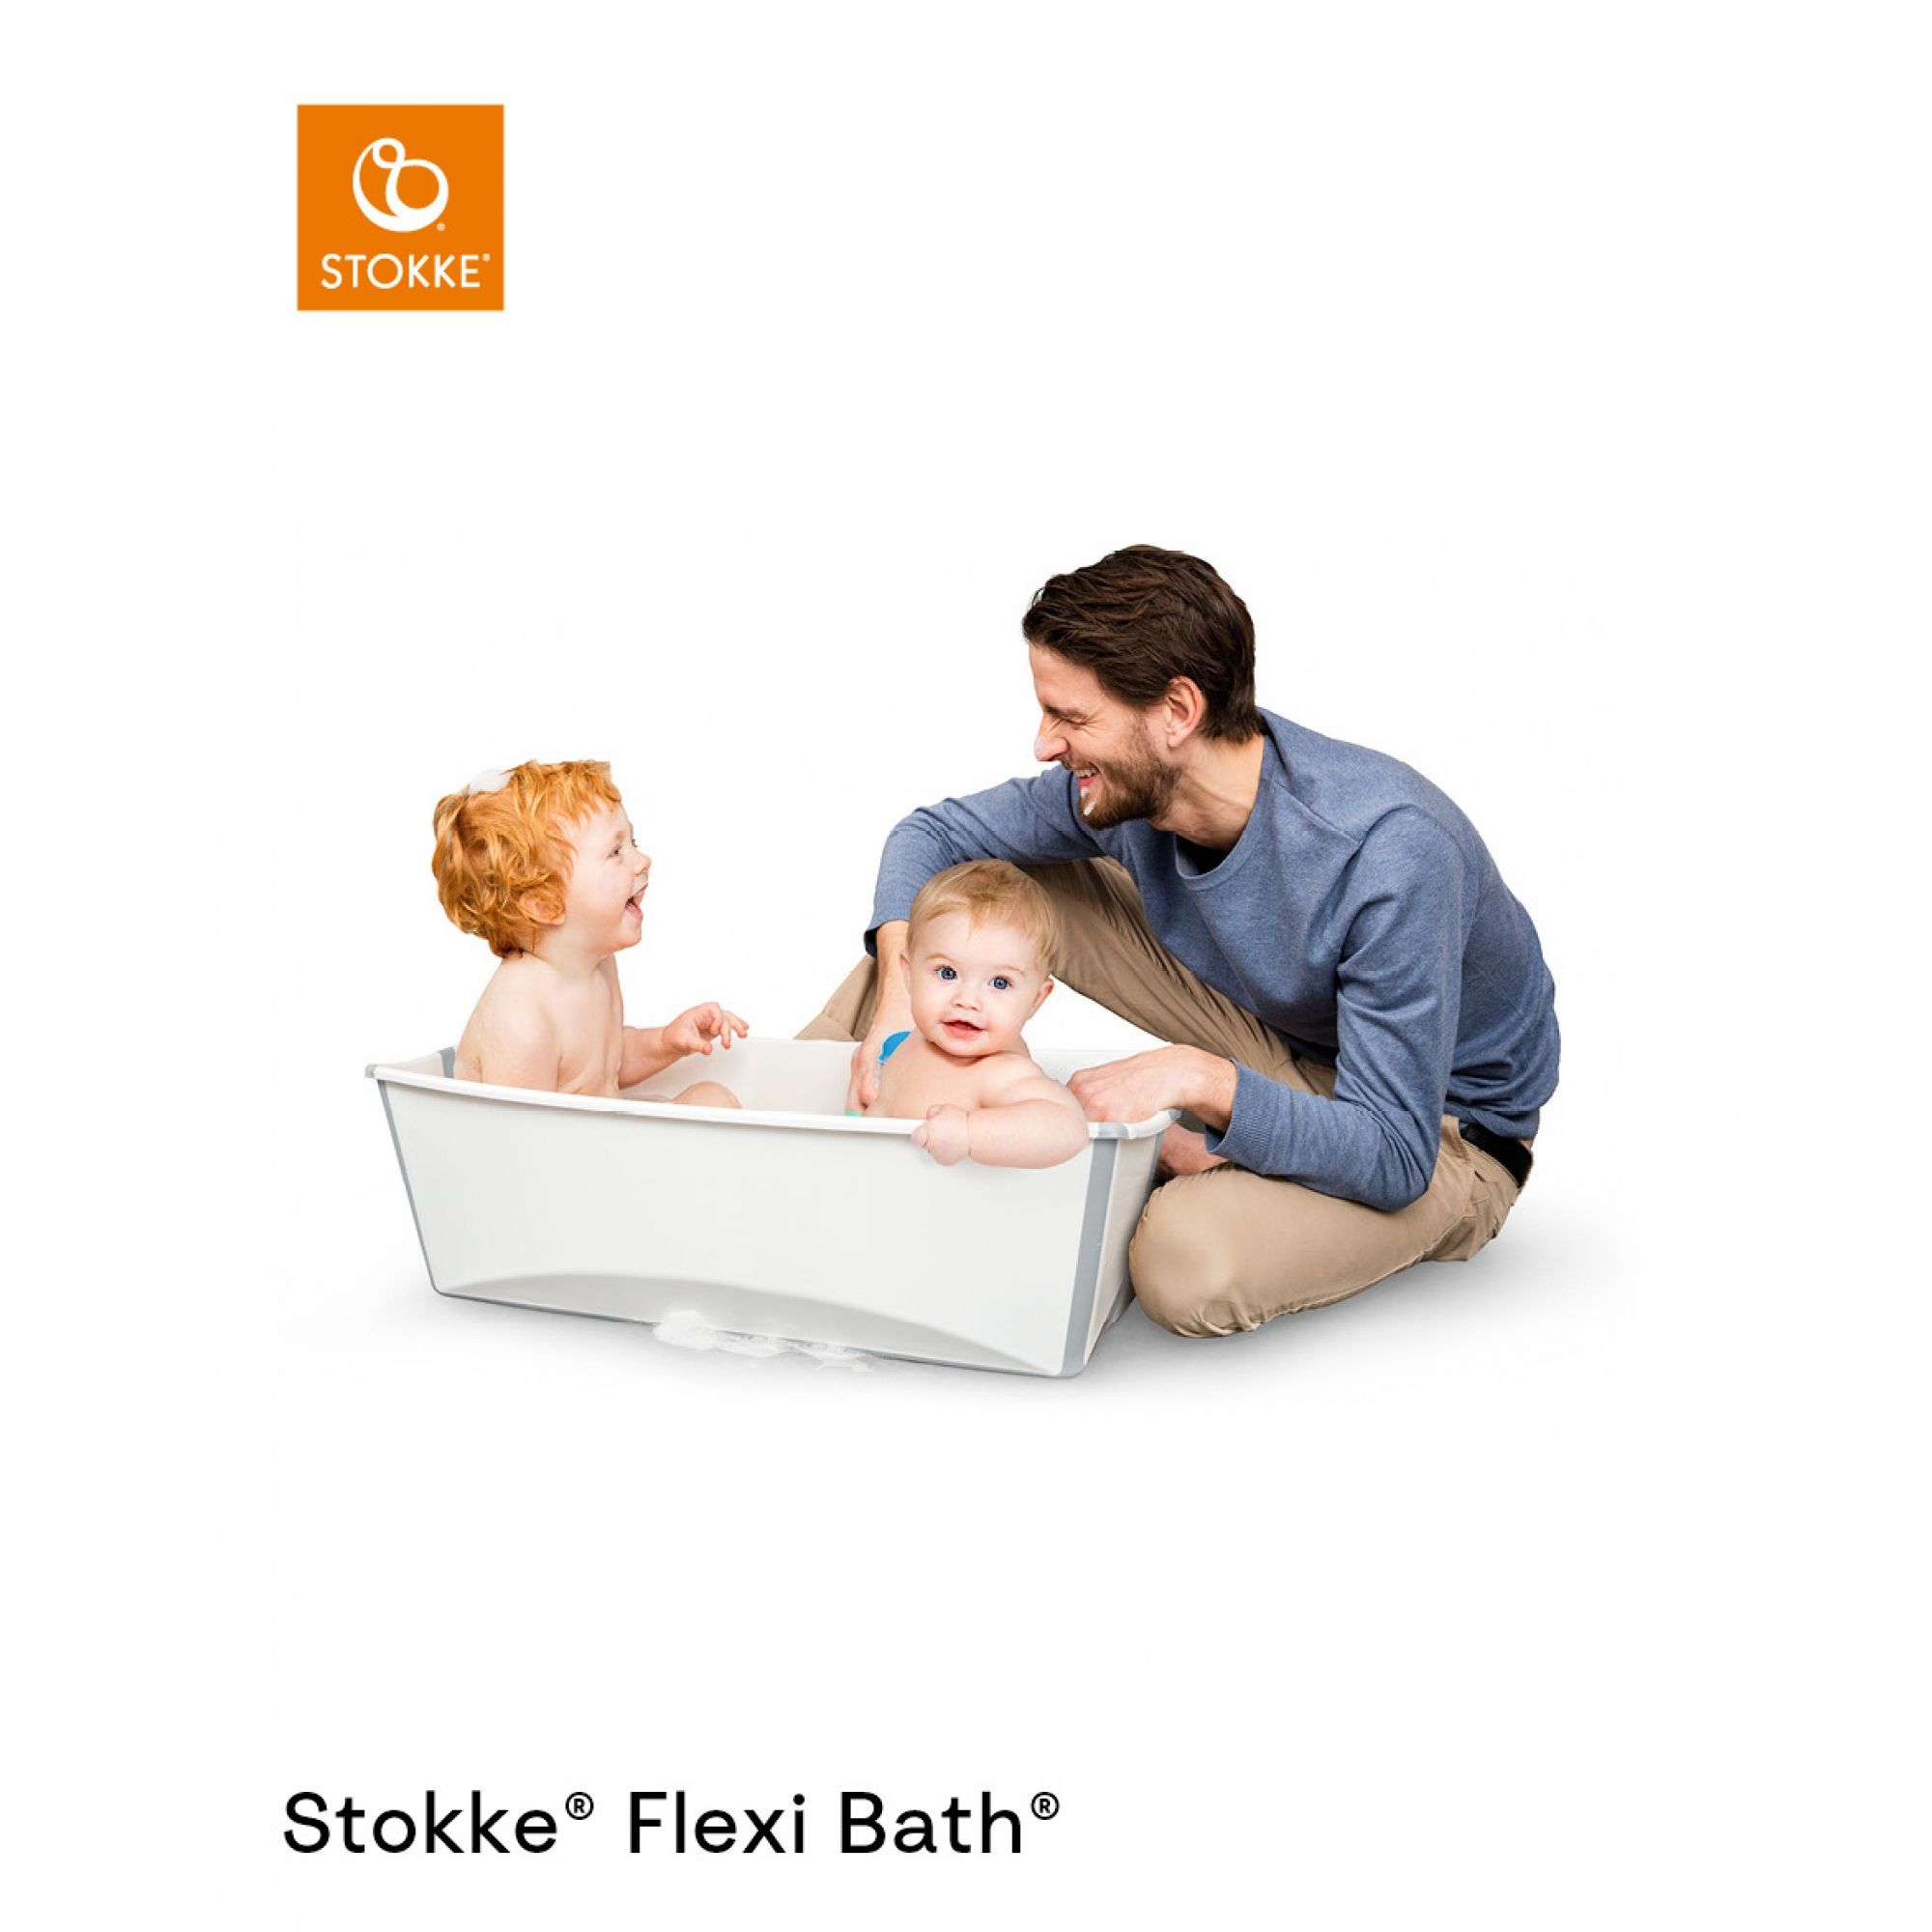 STOKKE : Vente en ligne de transats et porte-bébés STOKKE